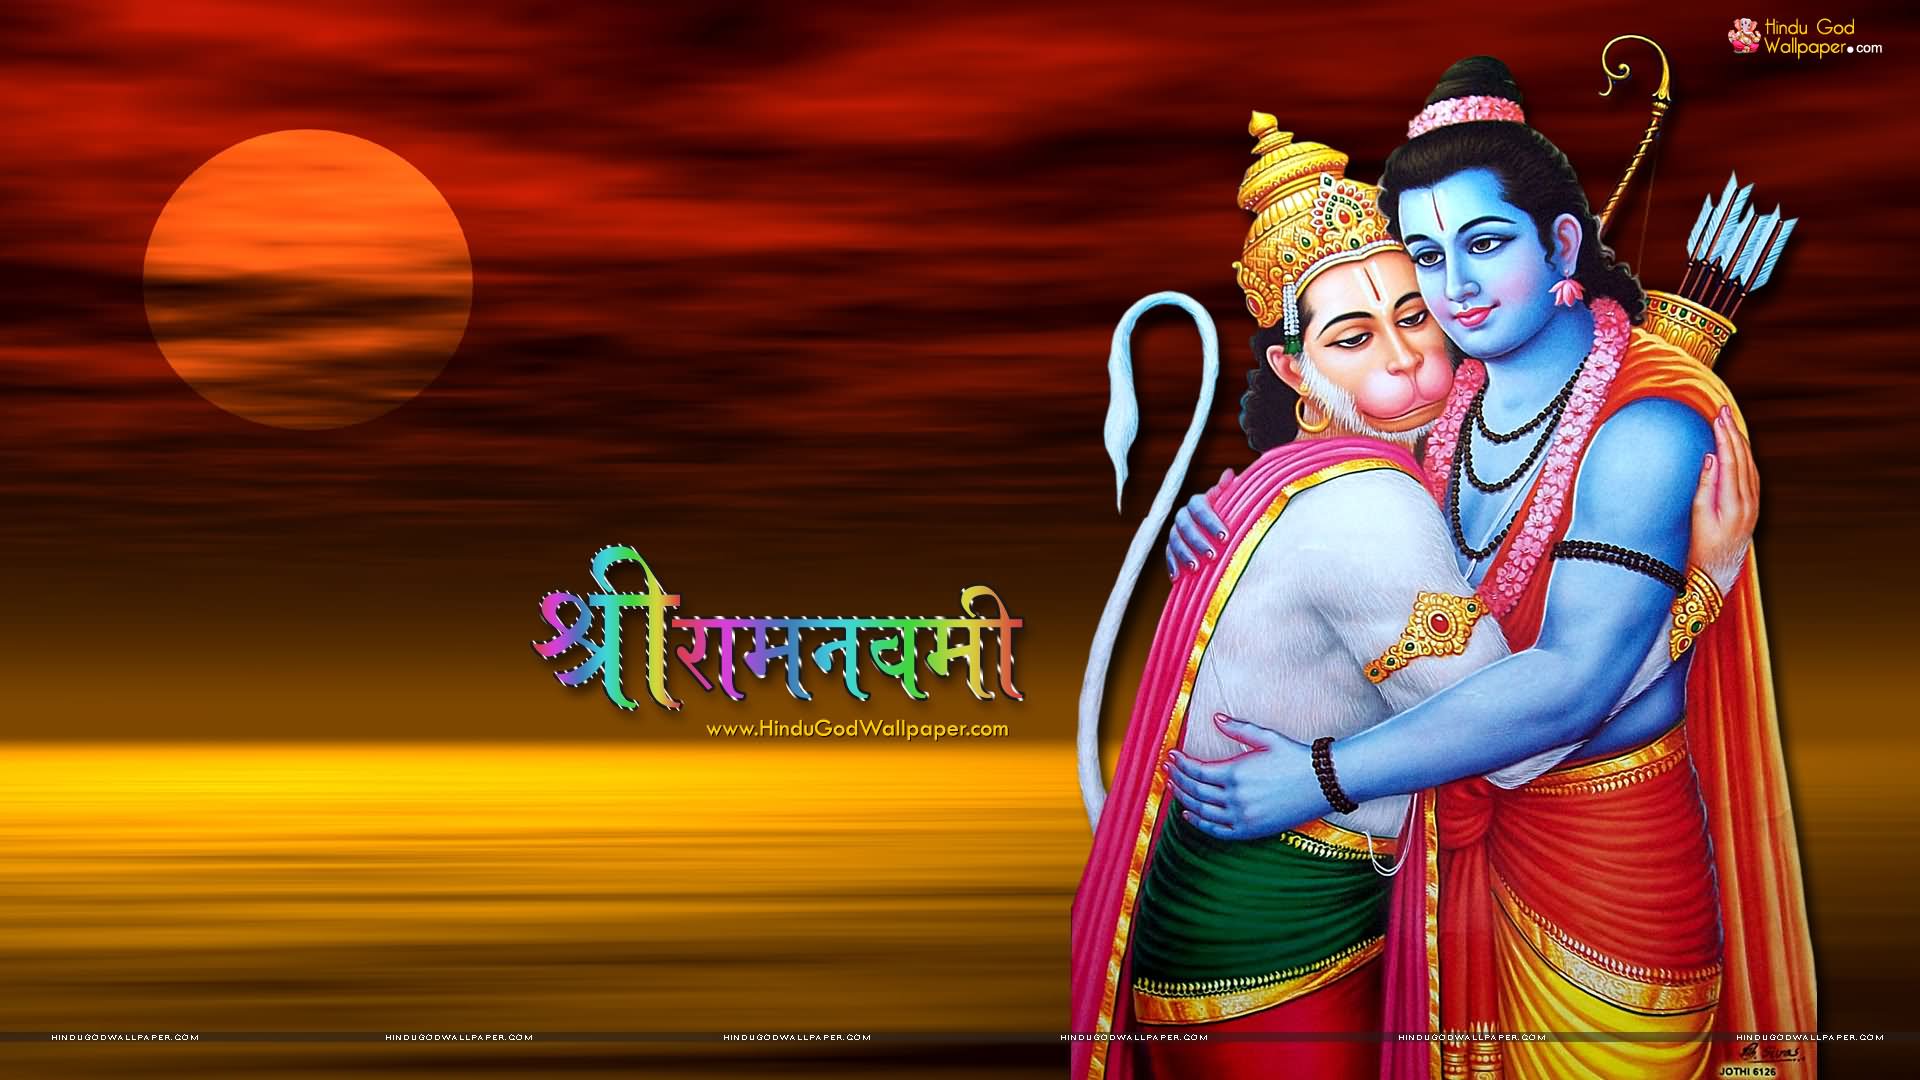 Shri Ram Navami Greetings Picture